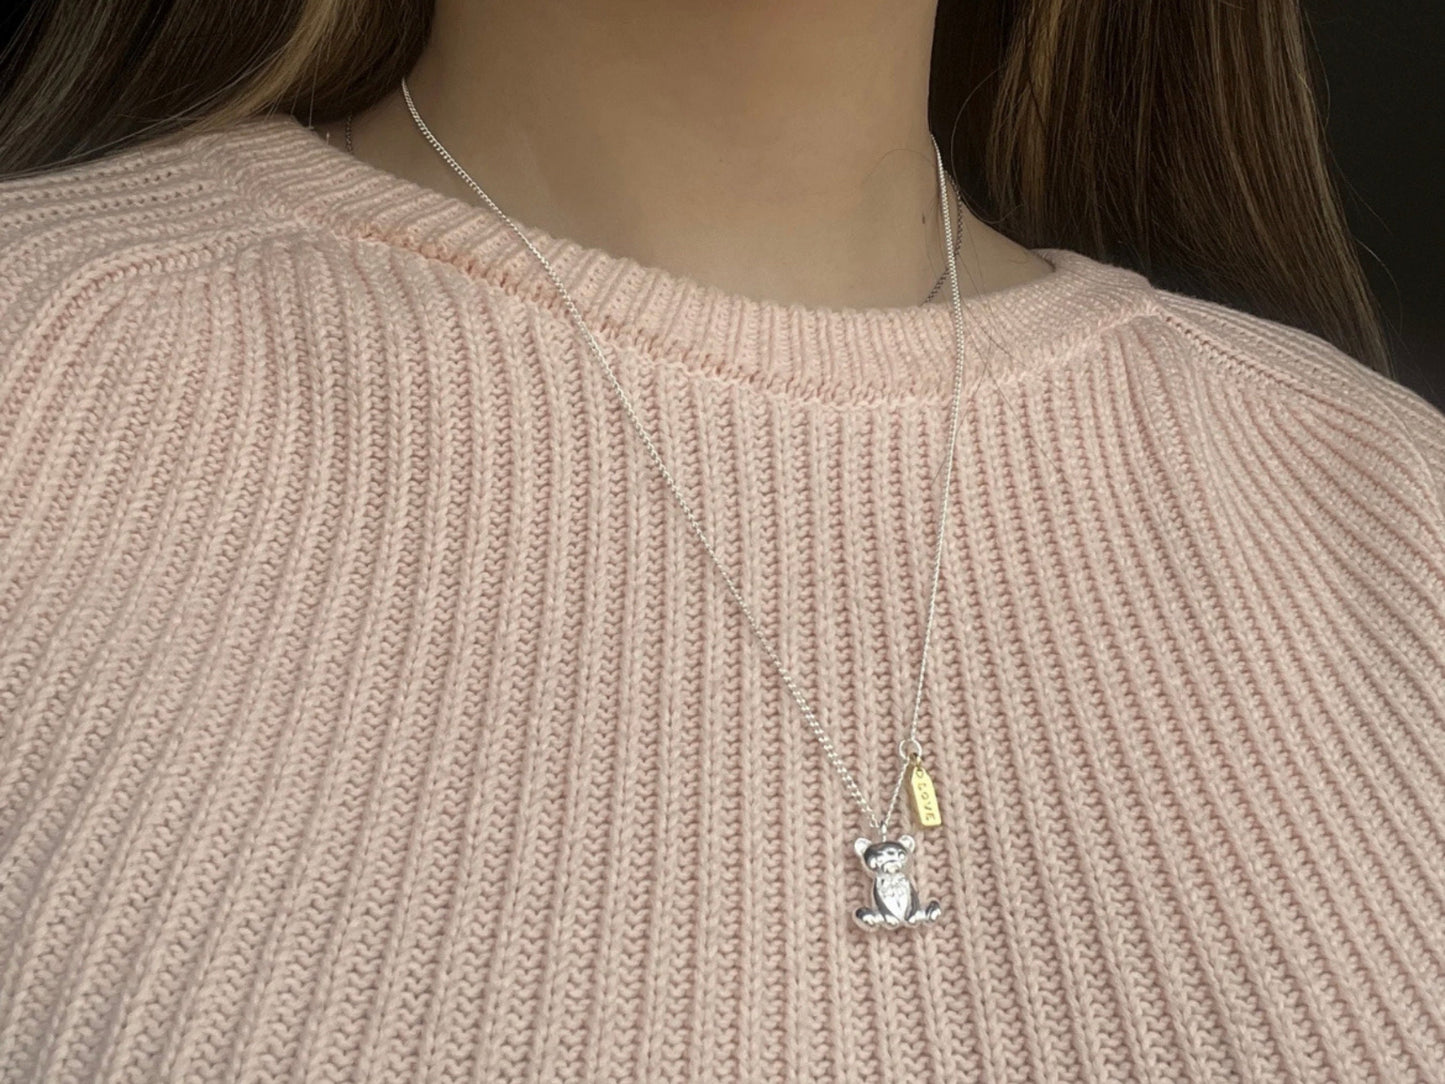 Cute Small Teddy Bear Charm Pendant Necklace